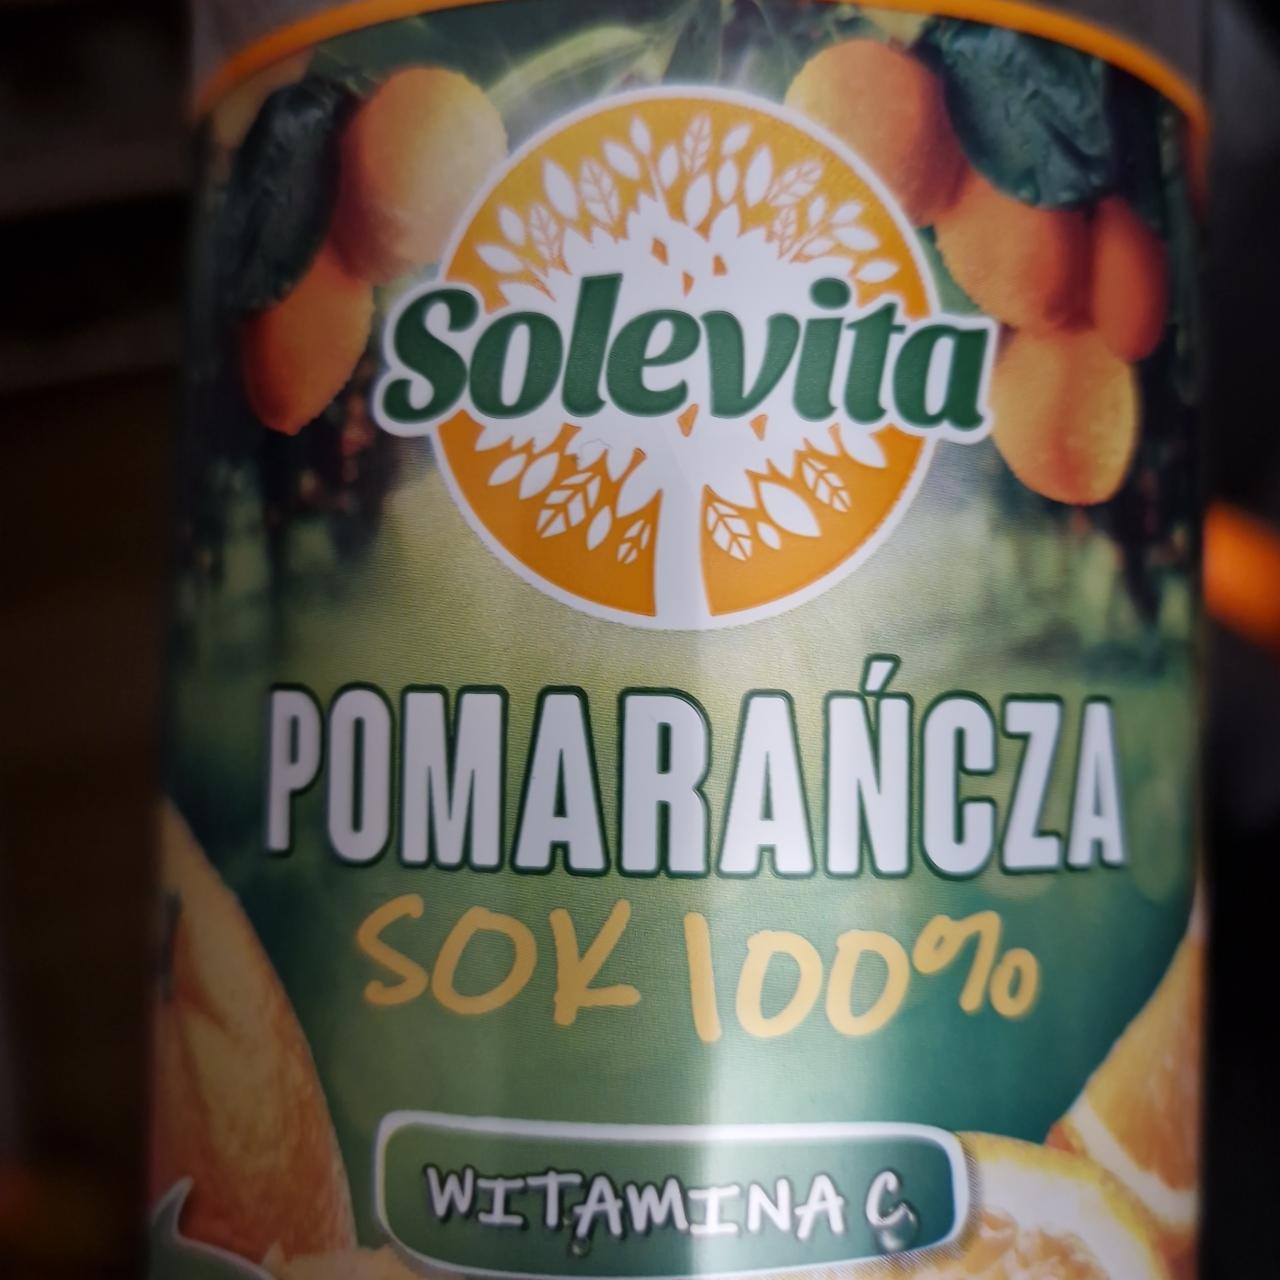 Zdjęcia - Pomarańcza sok 100% Solevita